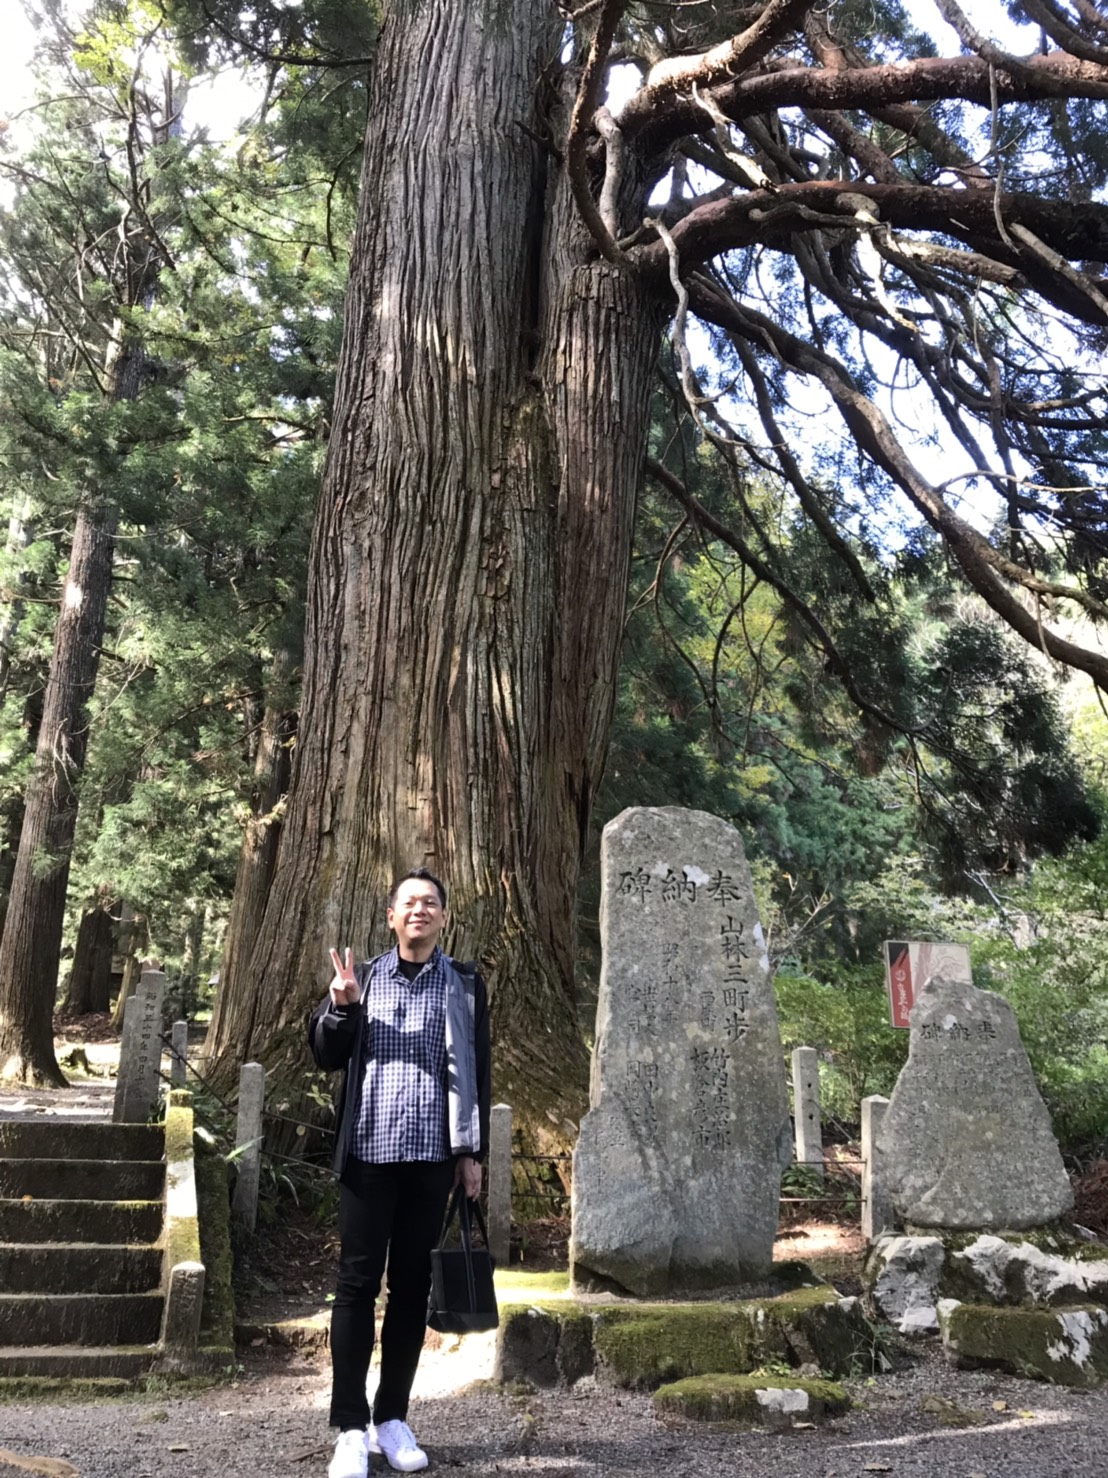 樹齢約1000年広島県下第2位の大きさの老杉